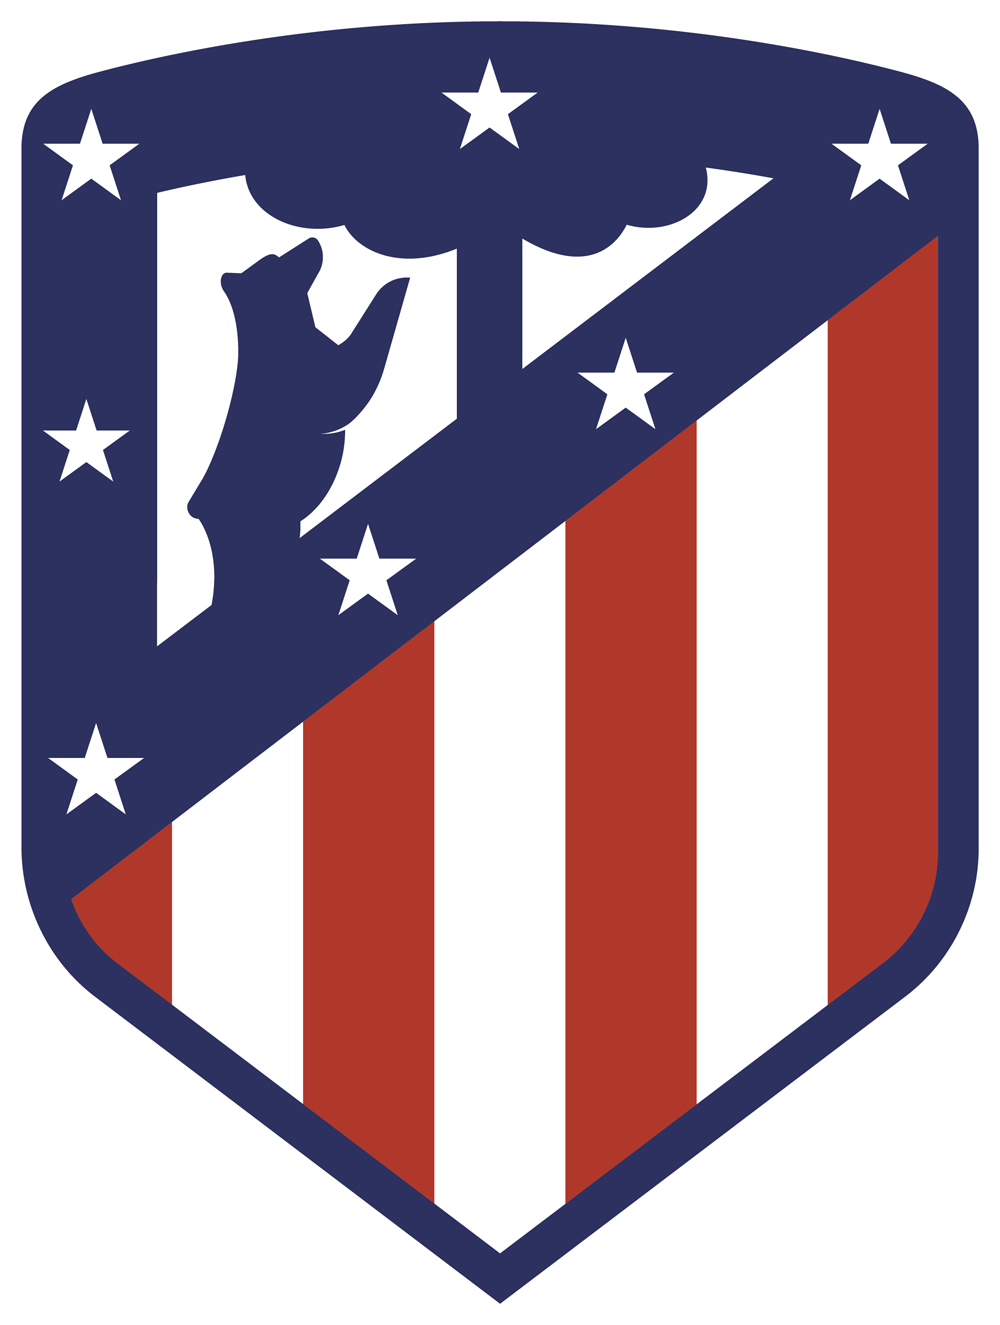 New Football Logo - New Logo for Atlético Madrid by Vasava | ❤️Football